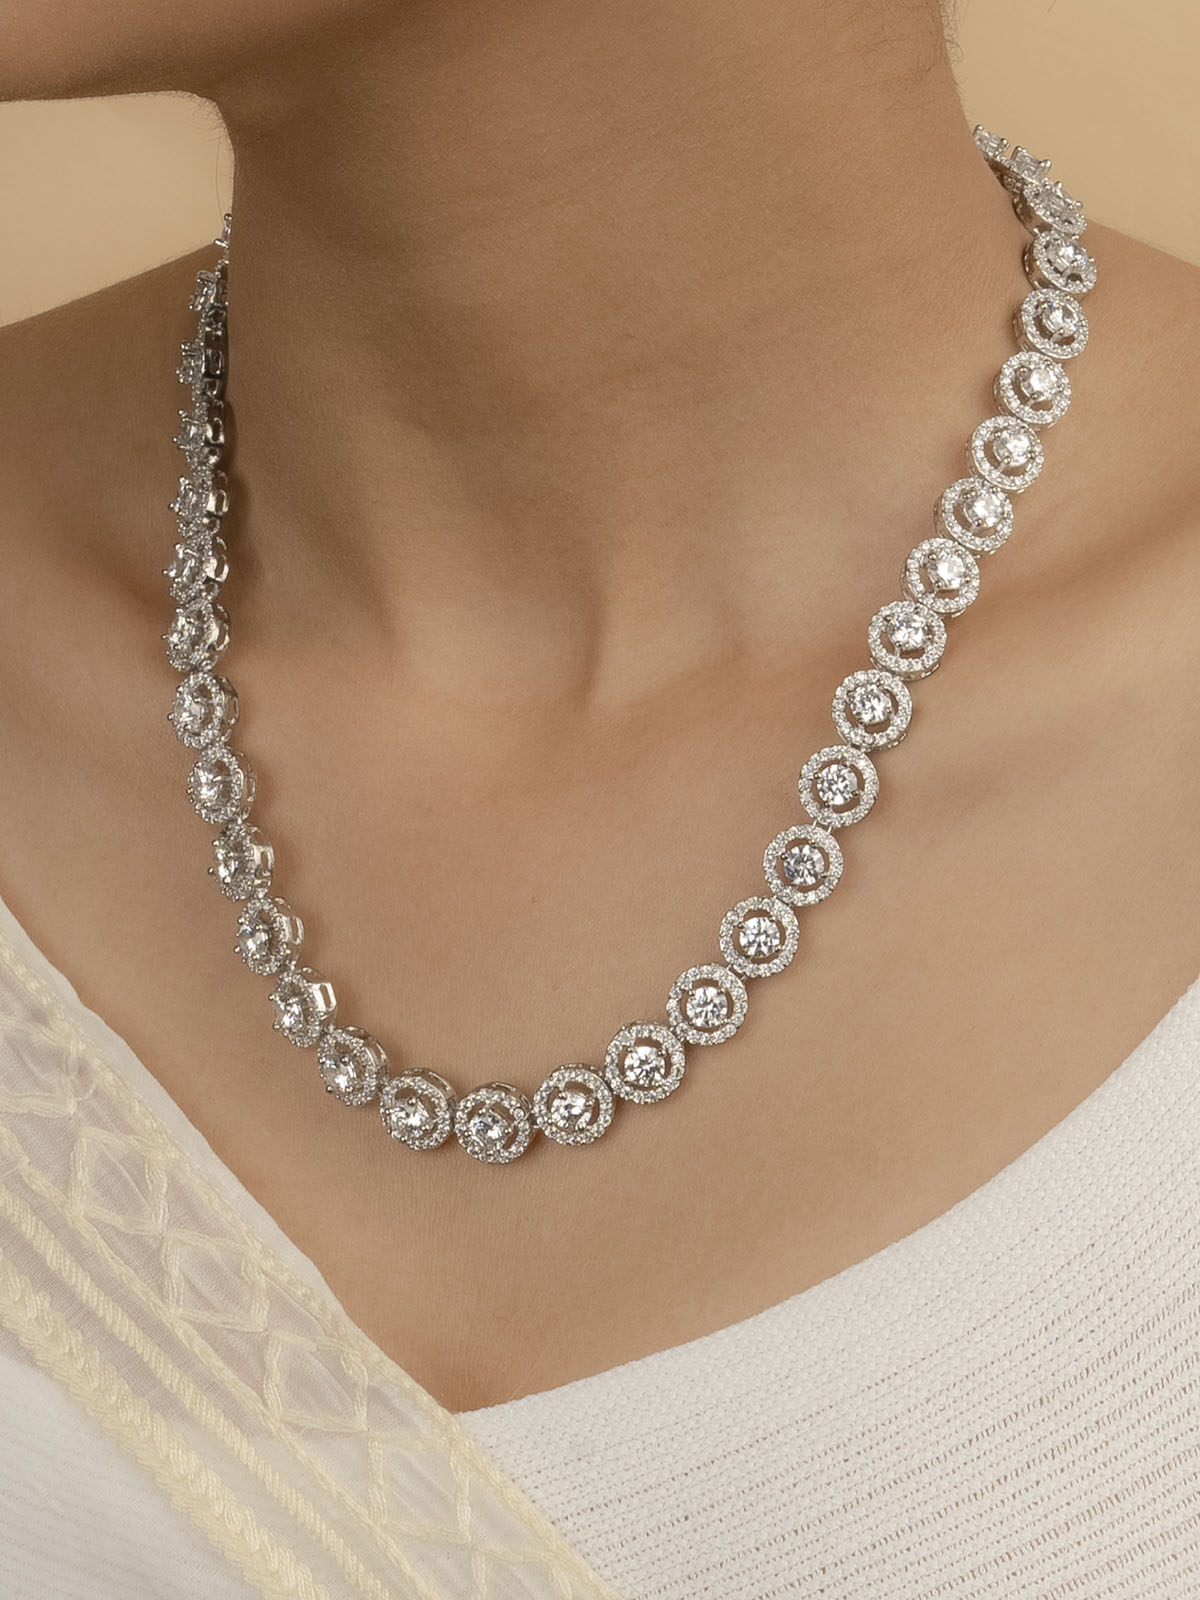 CZSET44 - White Color Faux Diamond Delicate Medium Necklace Sets